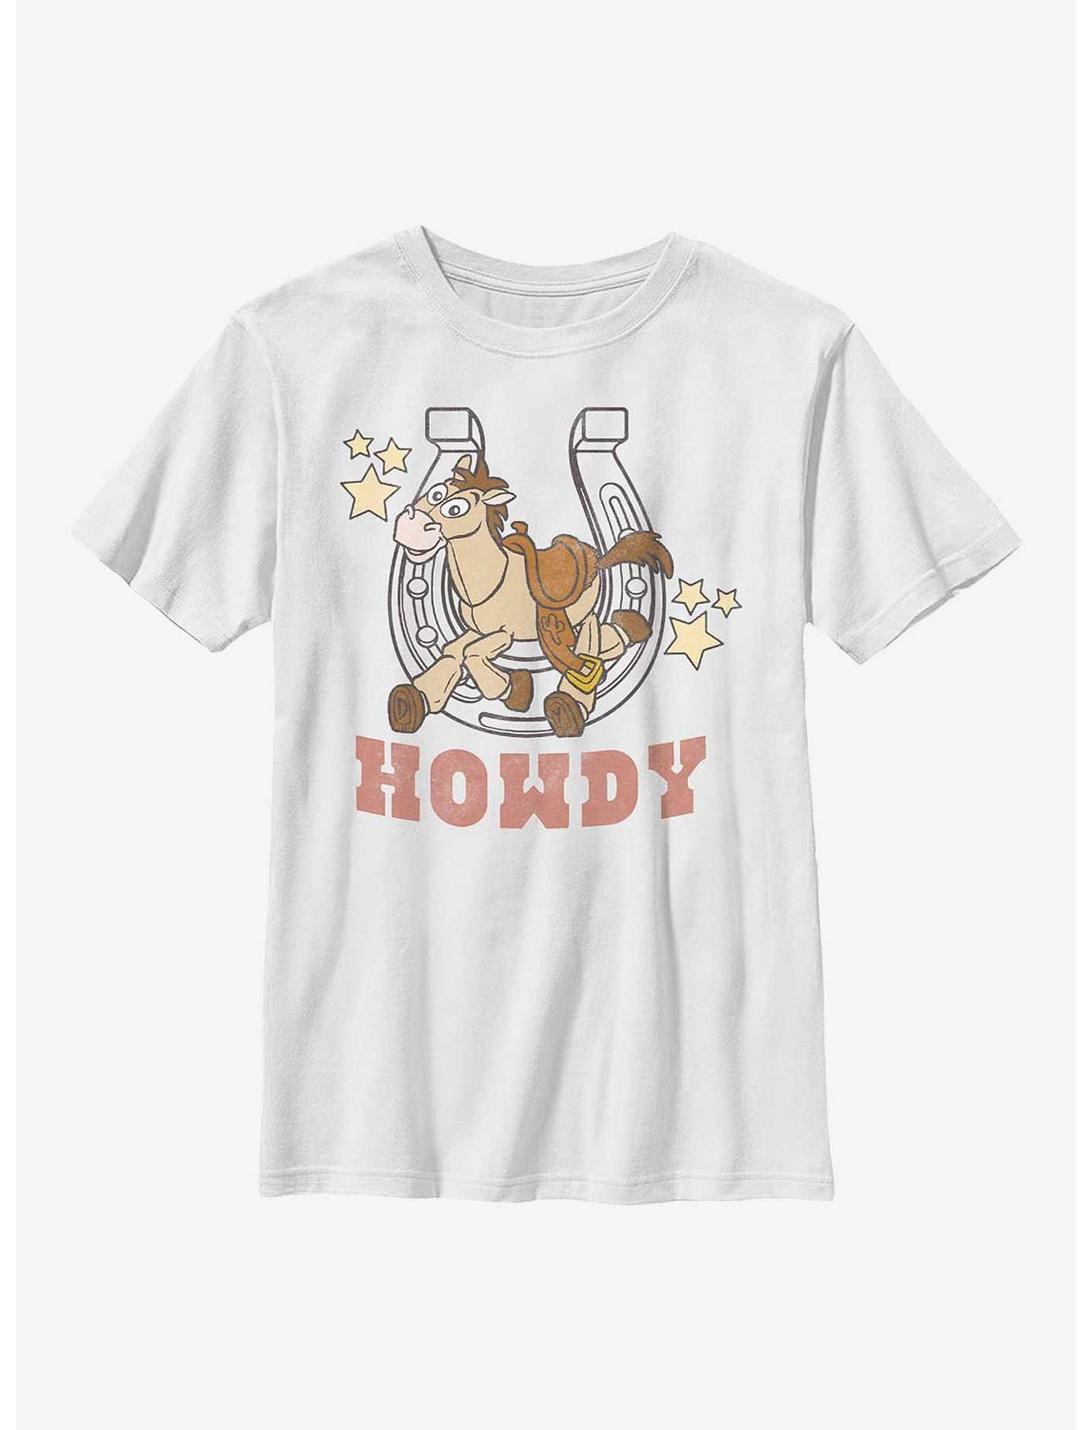 Disney Pixar Toy Story Howdy Bullseye Youth T-Shirt, WHITE, hi-res